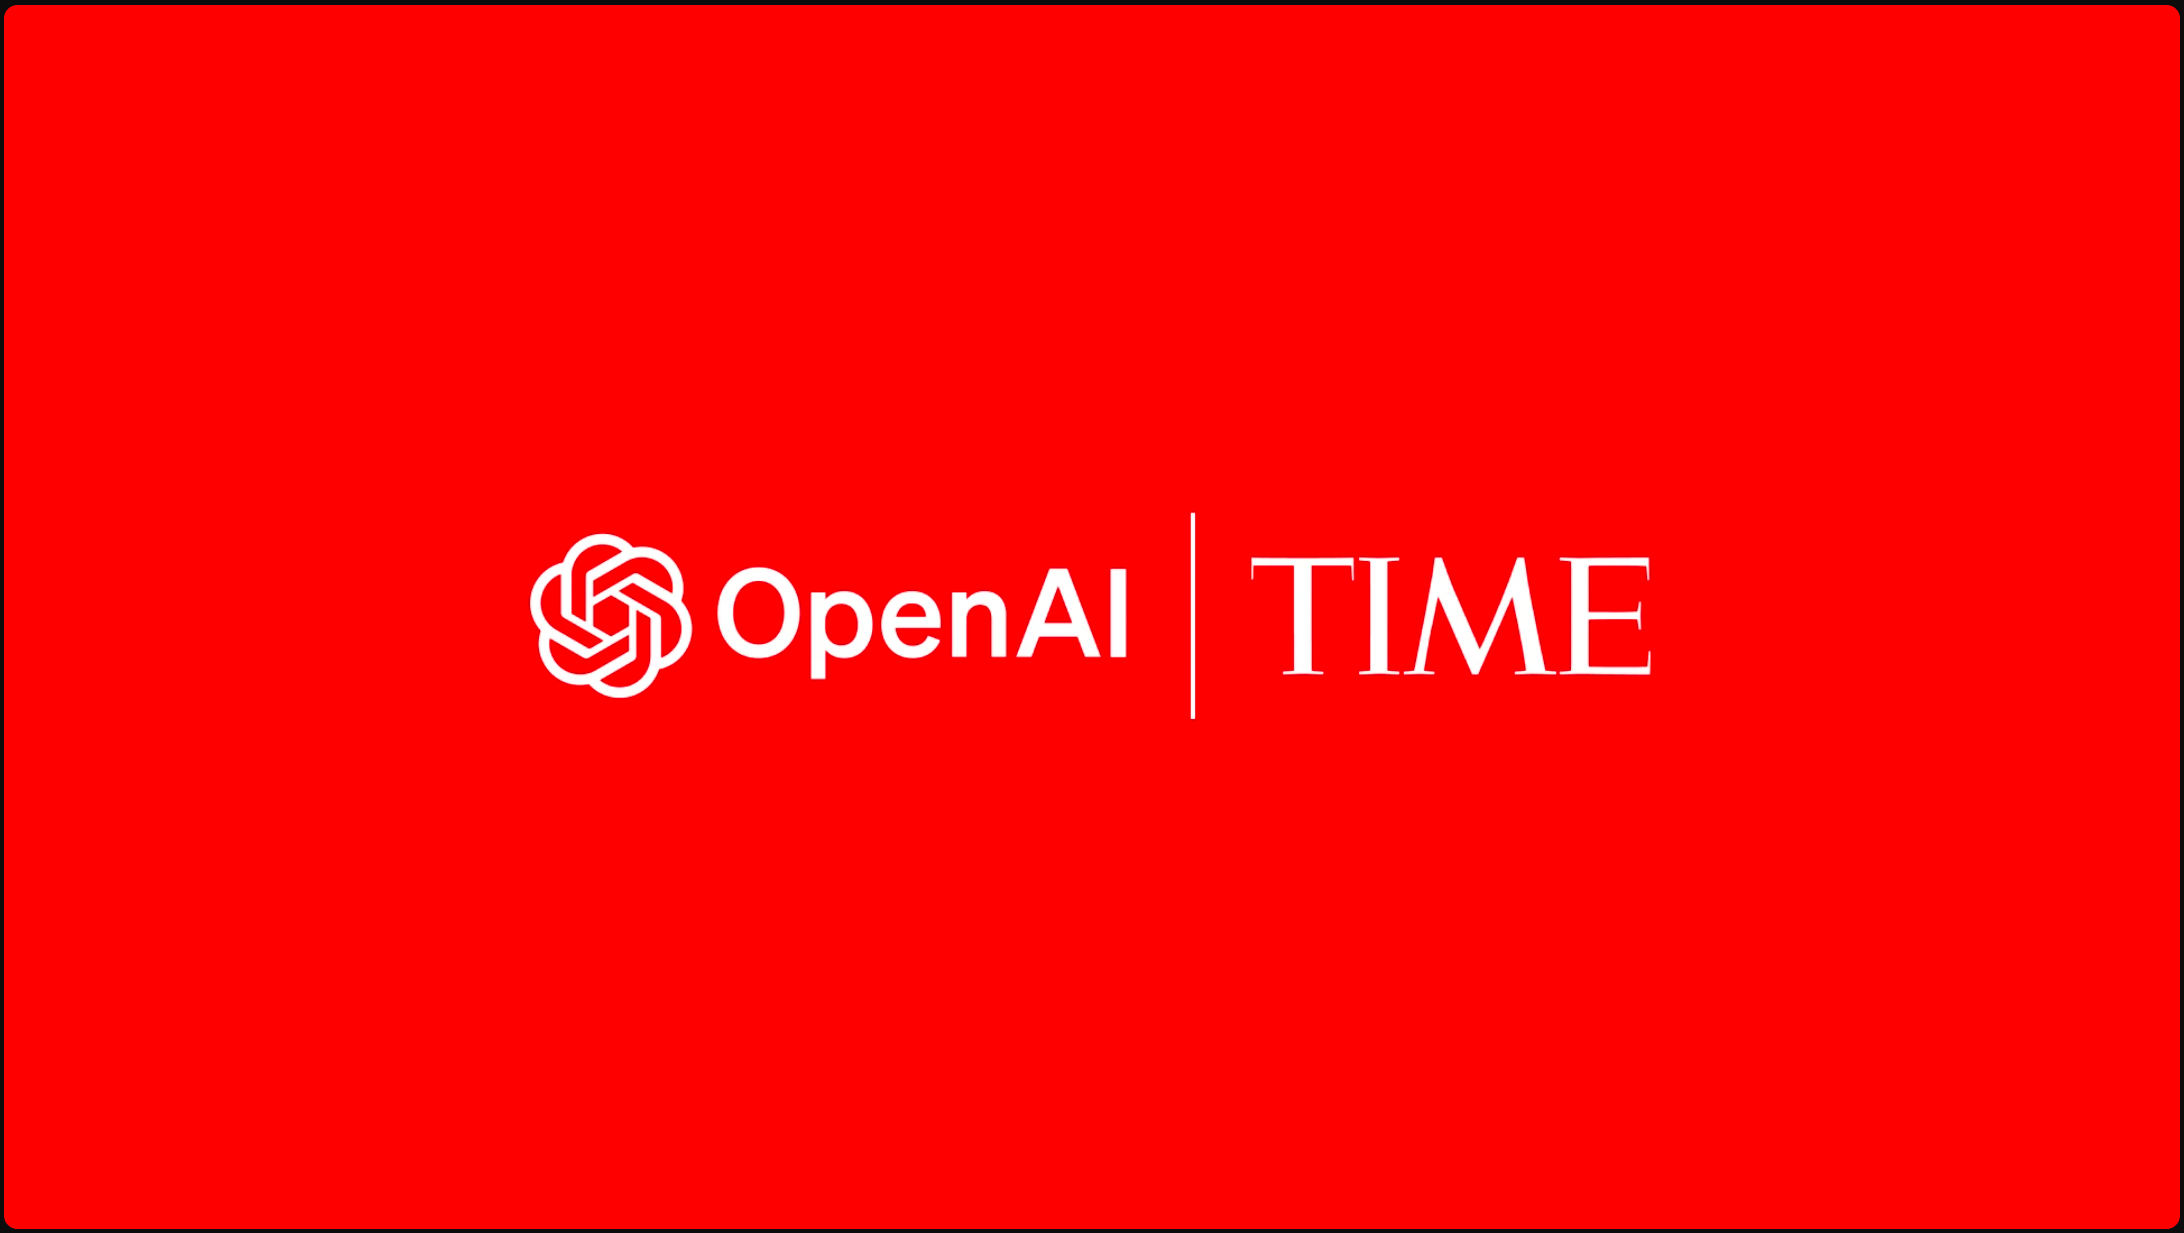 OpenAIは28日、TIMES誌と提携した。赤色の背景に、白文字で画面の中央にOpenAIとTIMESのロゴが表示されている。